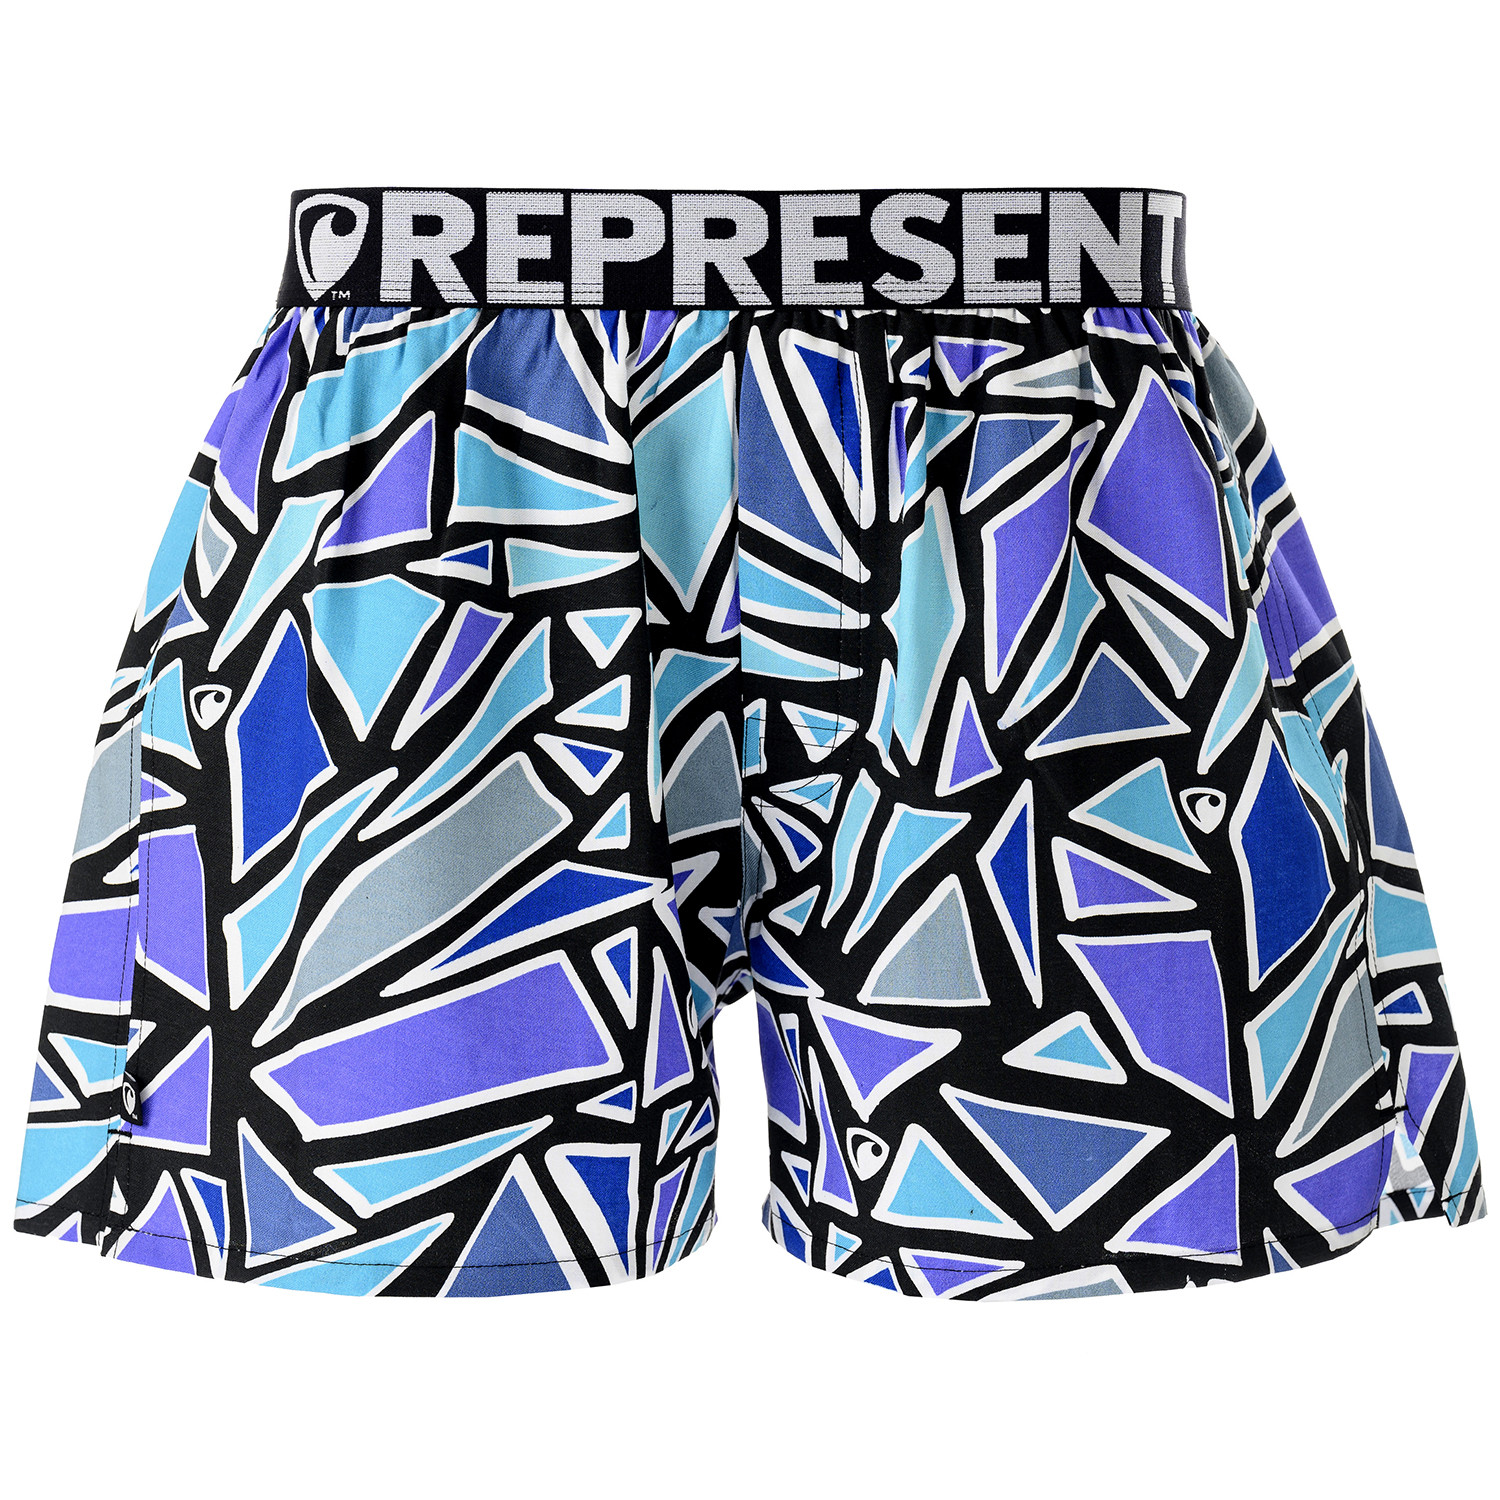 Men's shorts Represent exclusive Mike decomposition